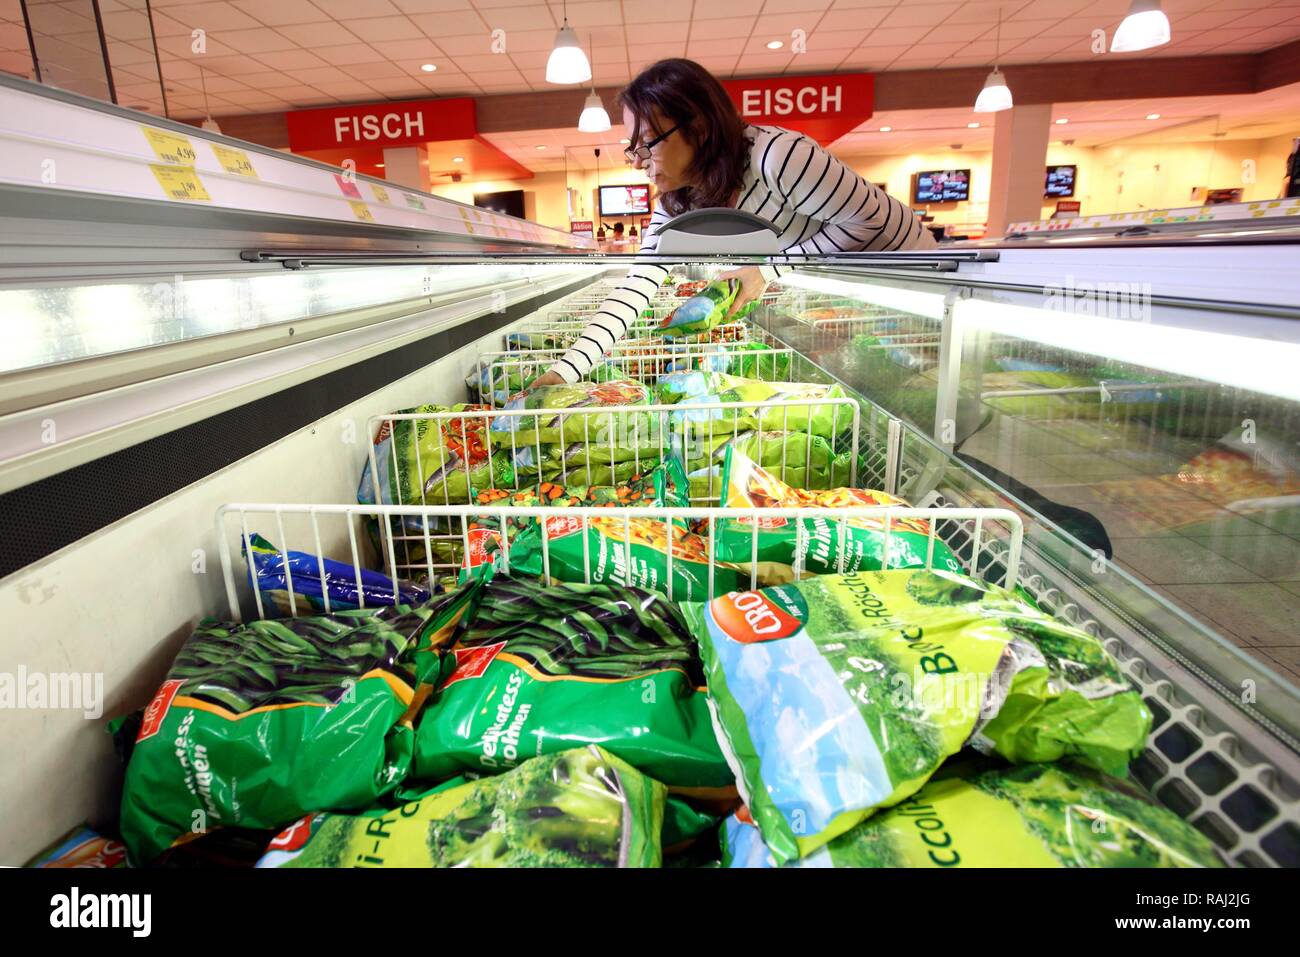 Frau Einkauf gefrorenes Gemüse in der Tiefkühlkost Abschnitt einer Self-service-lebensmittelabteilung, Supermarkt Stockfoto